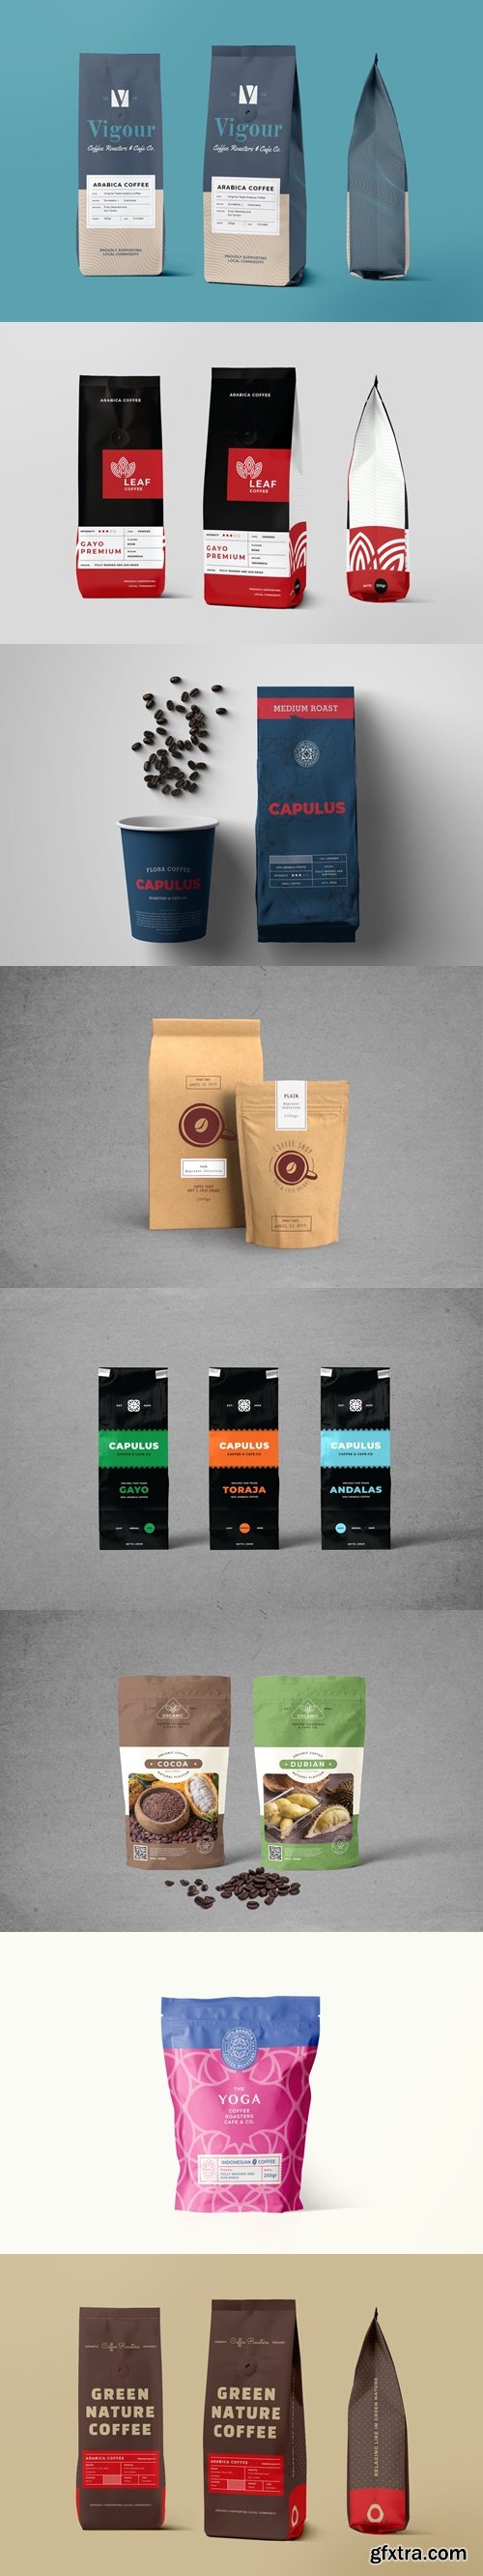 Coffee Bag Packaging Mockup Bundle 2